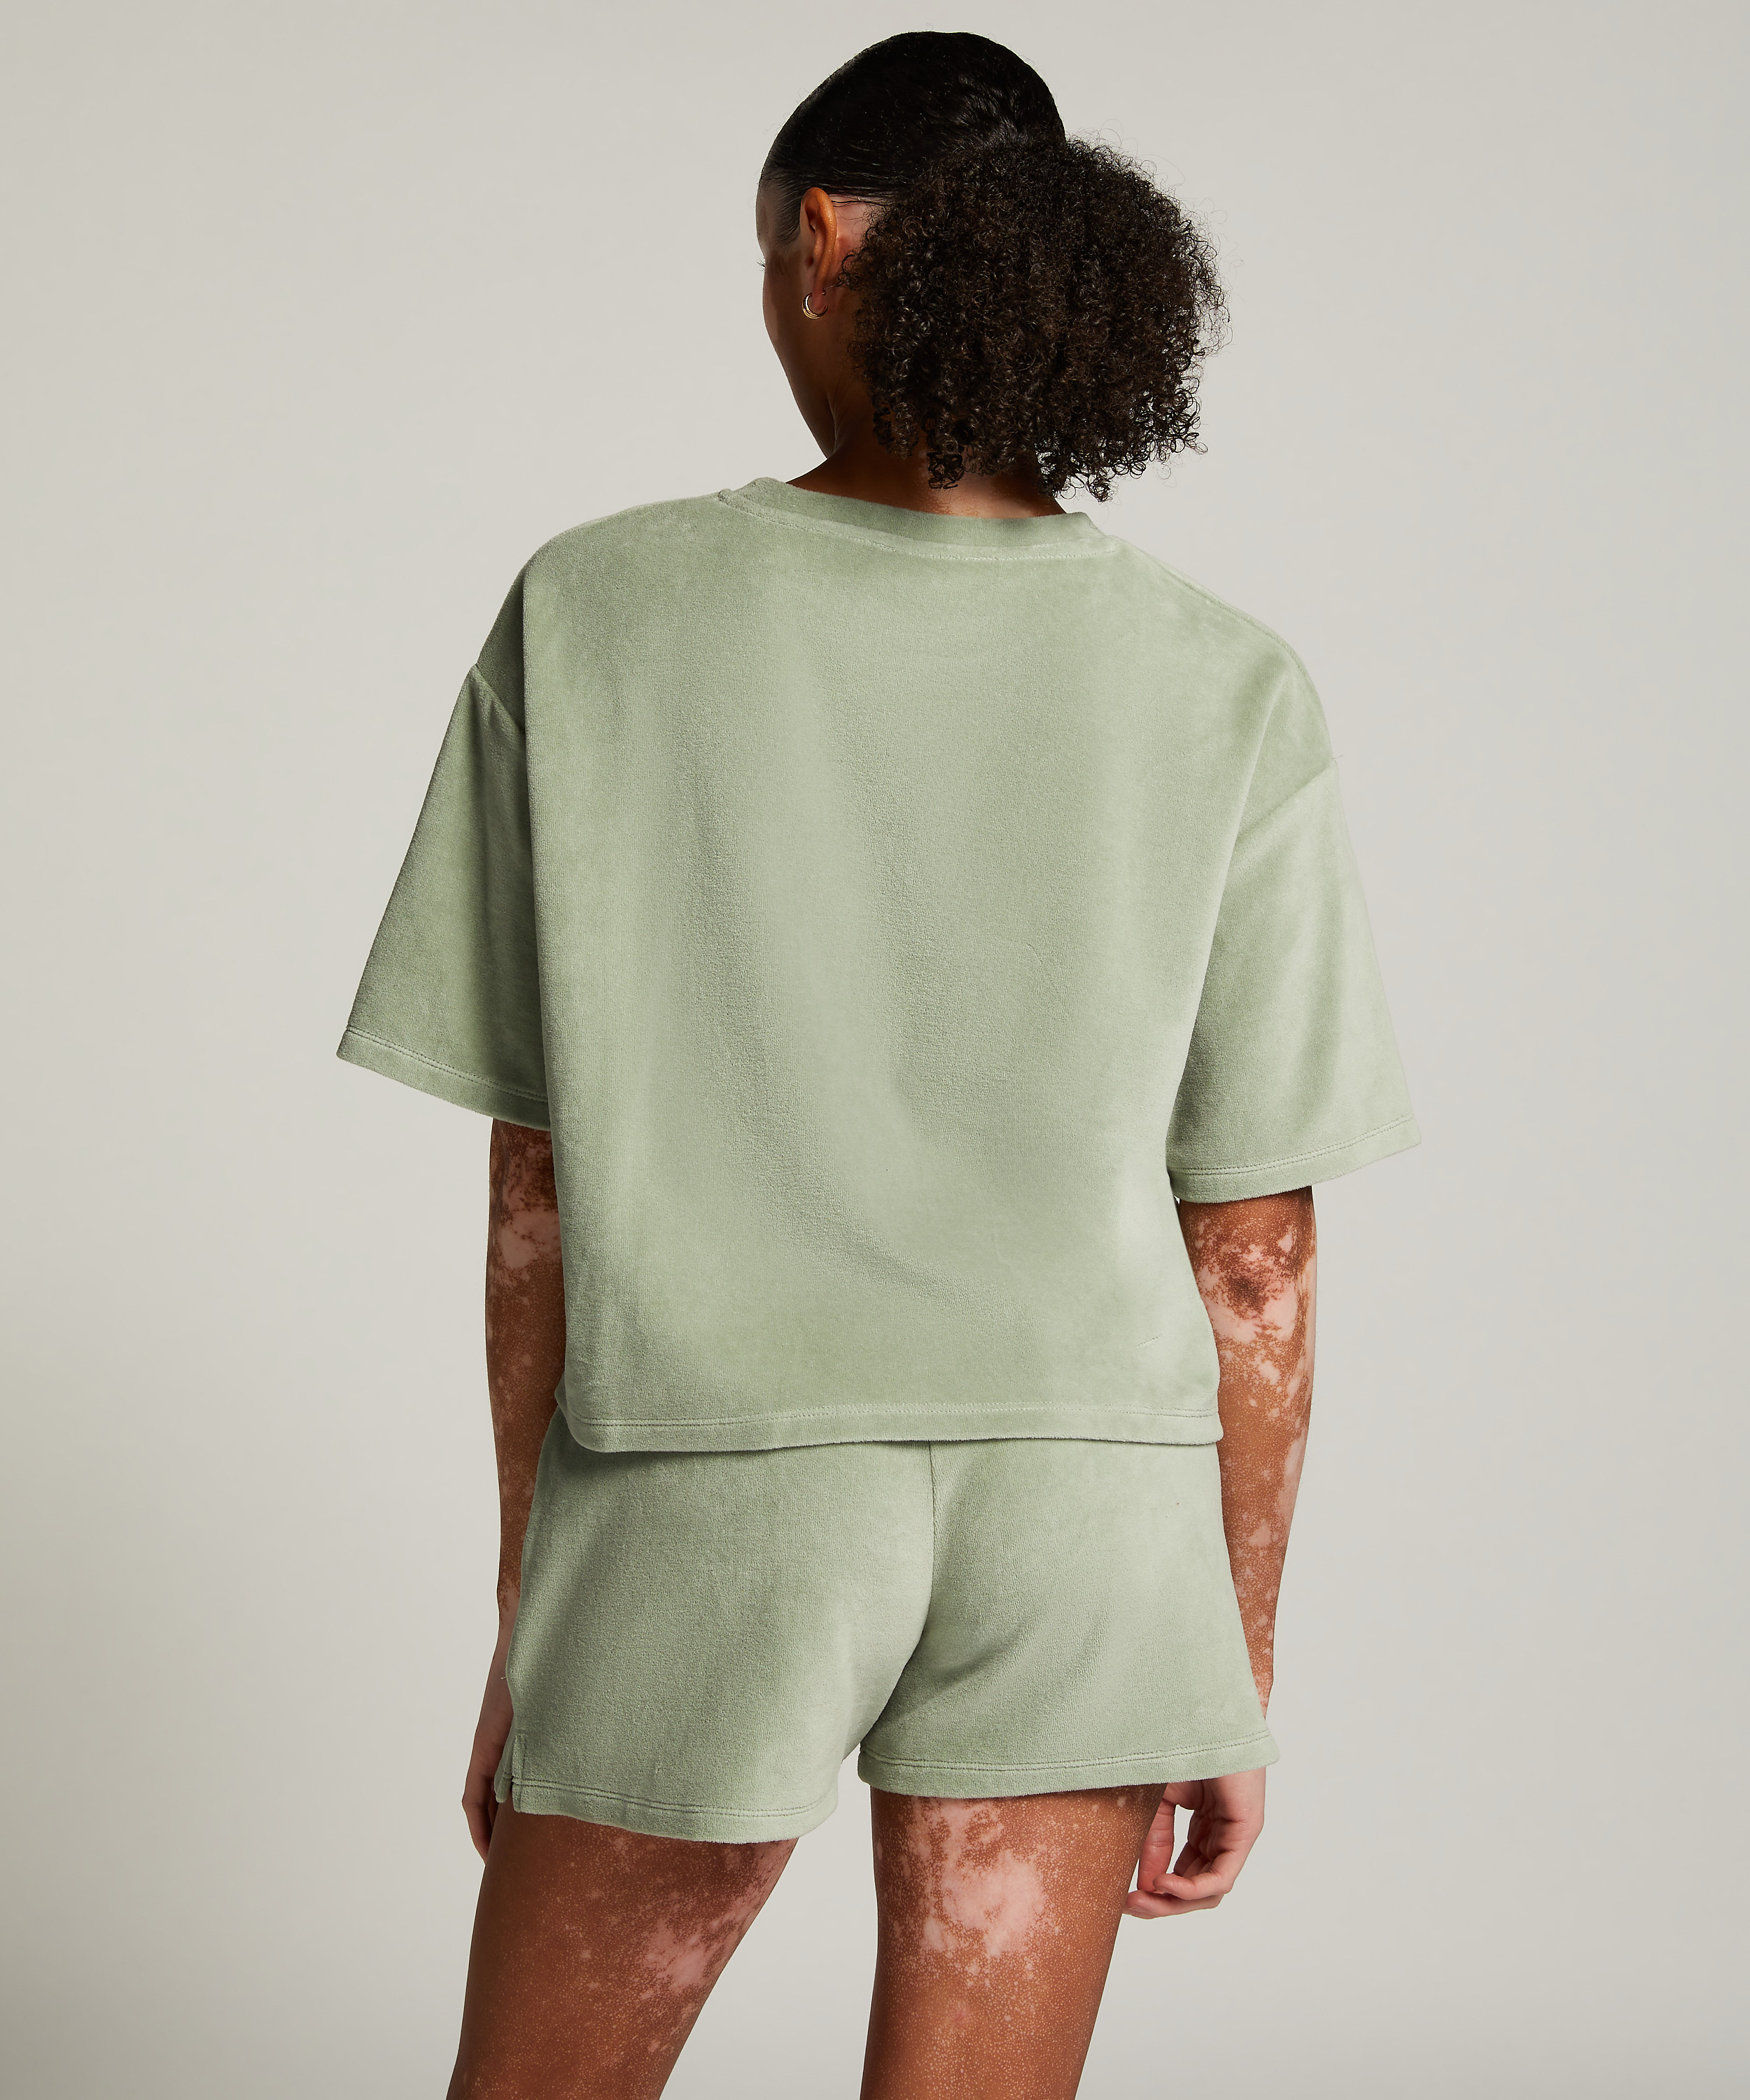 Shorts Velours Pocket, grün, main